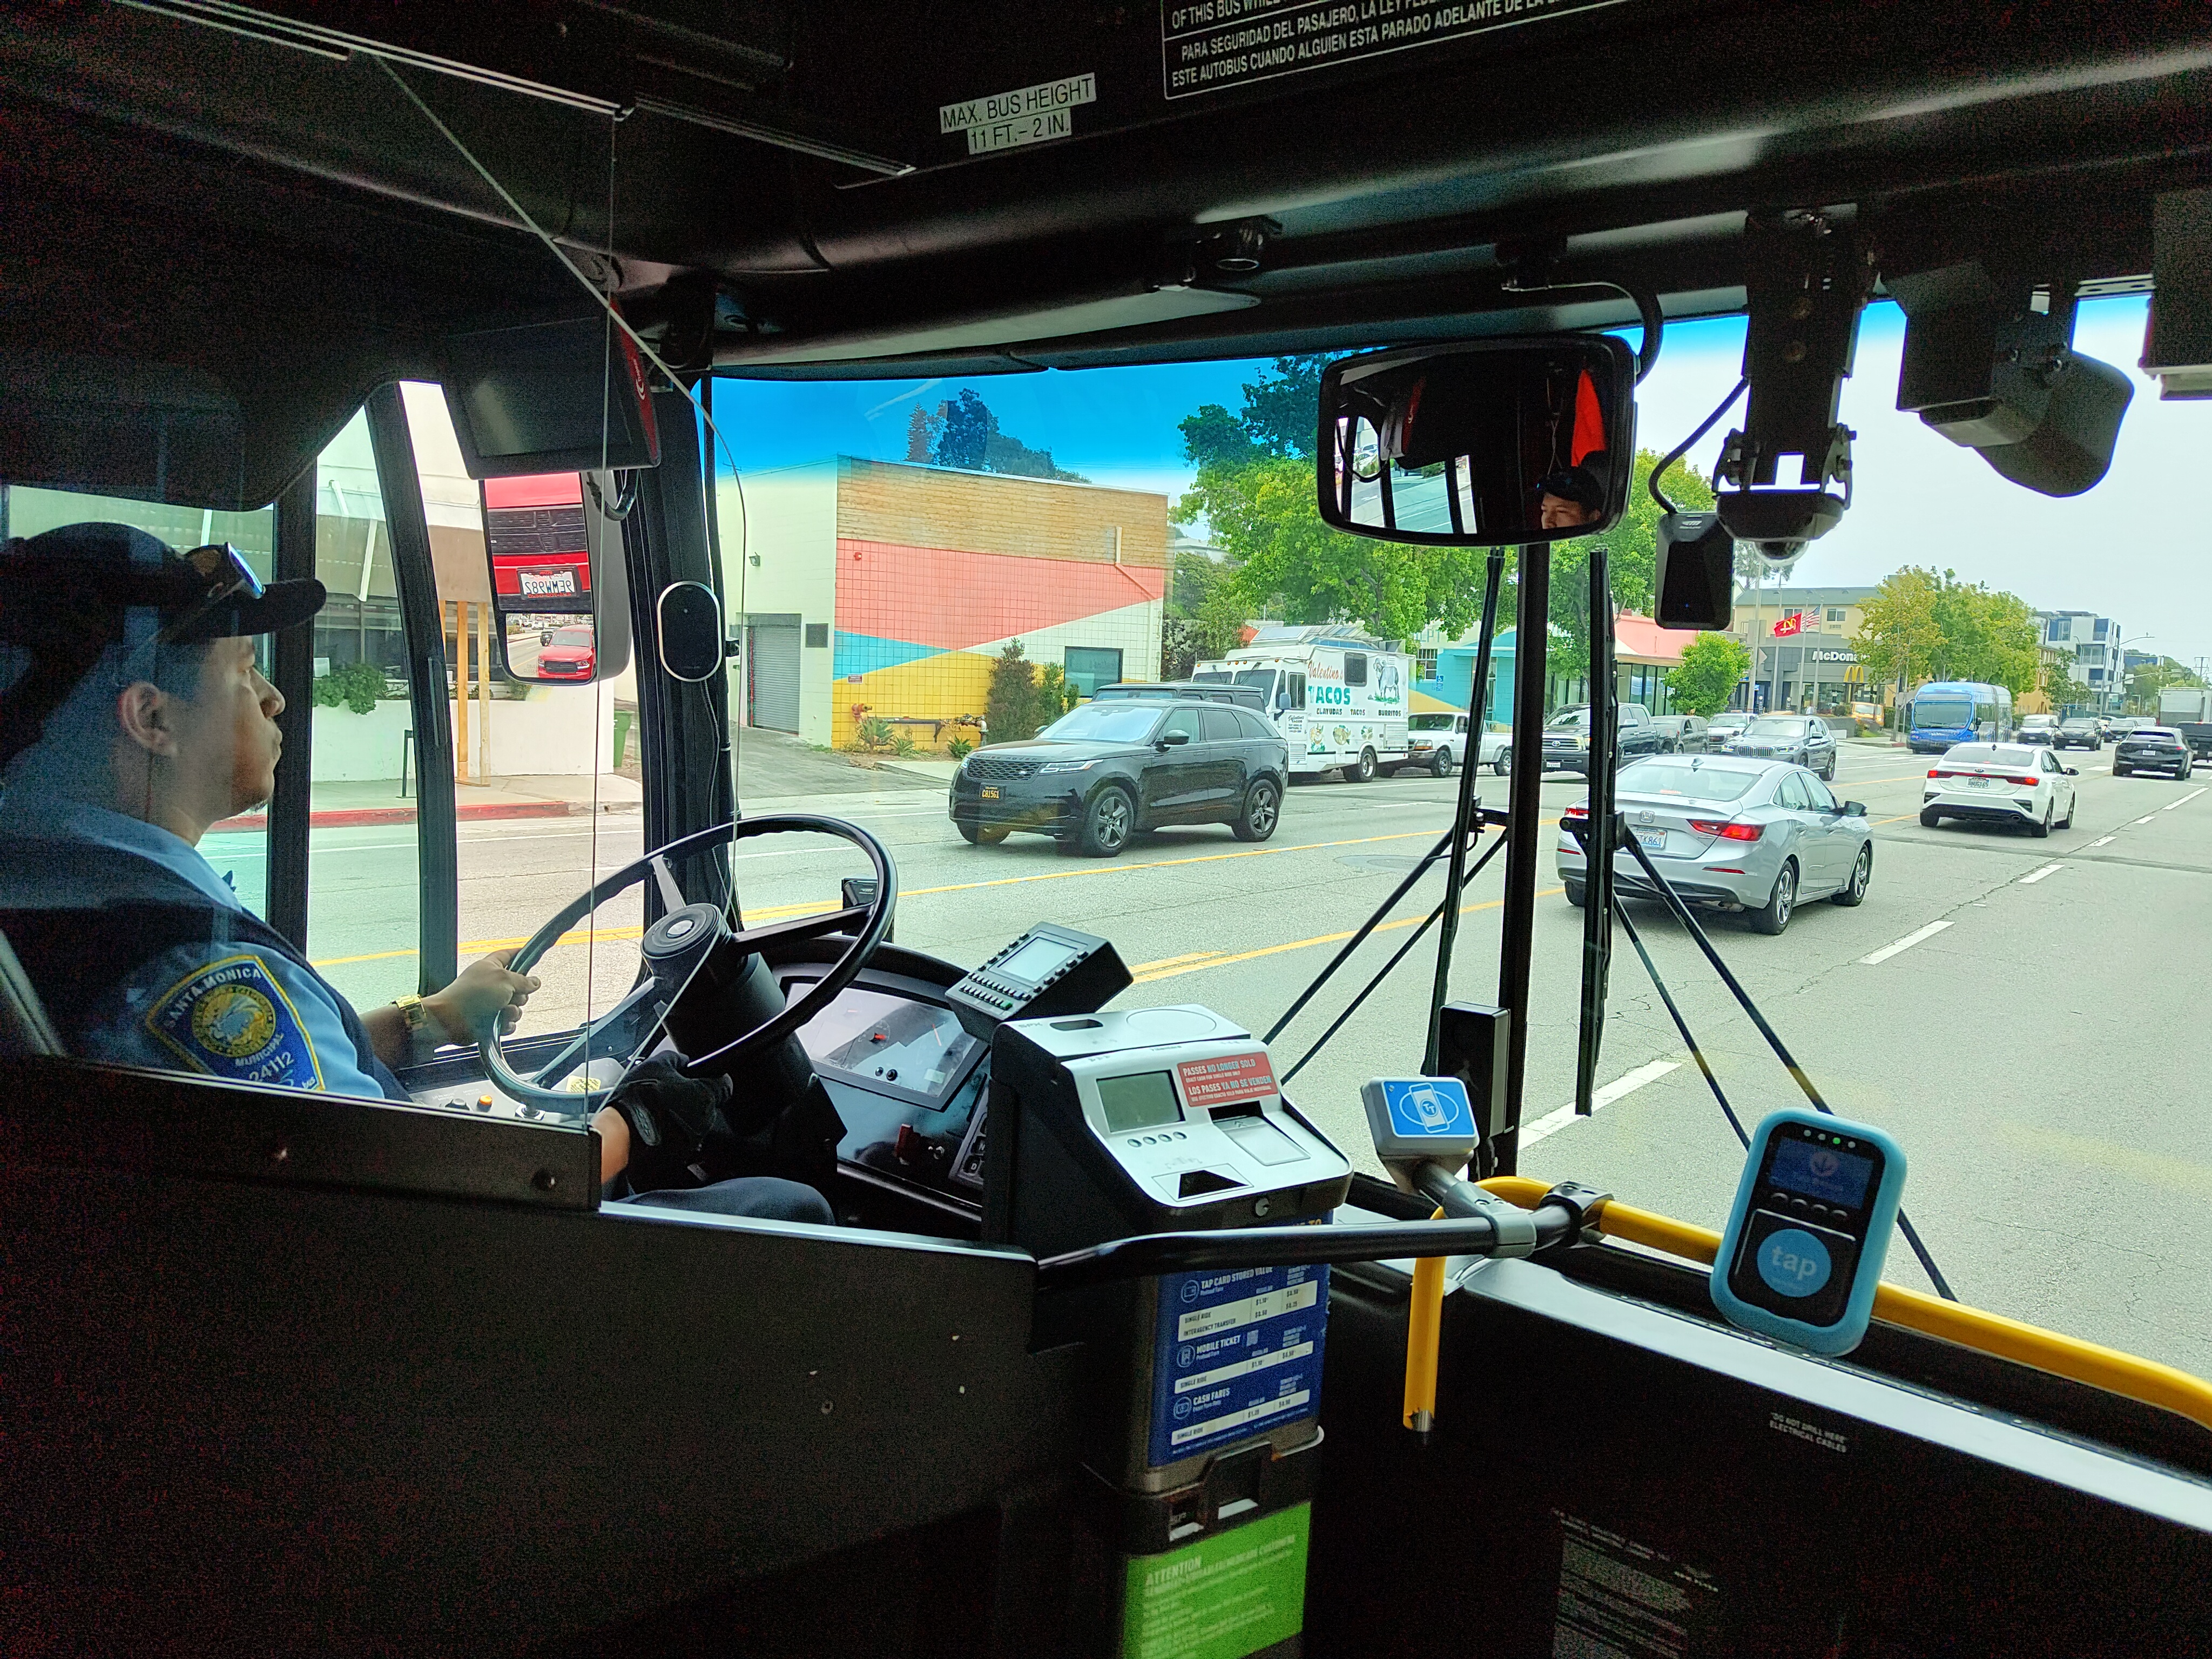 En EE.UU., los autobuses están equipados con inteligencia artificial que multa automáticamente a los coches aparcados en la línea de autobuses.